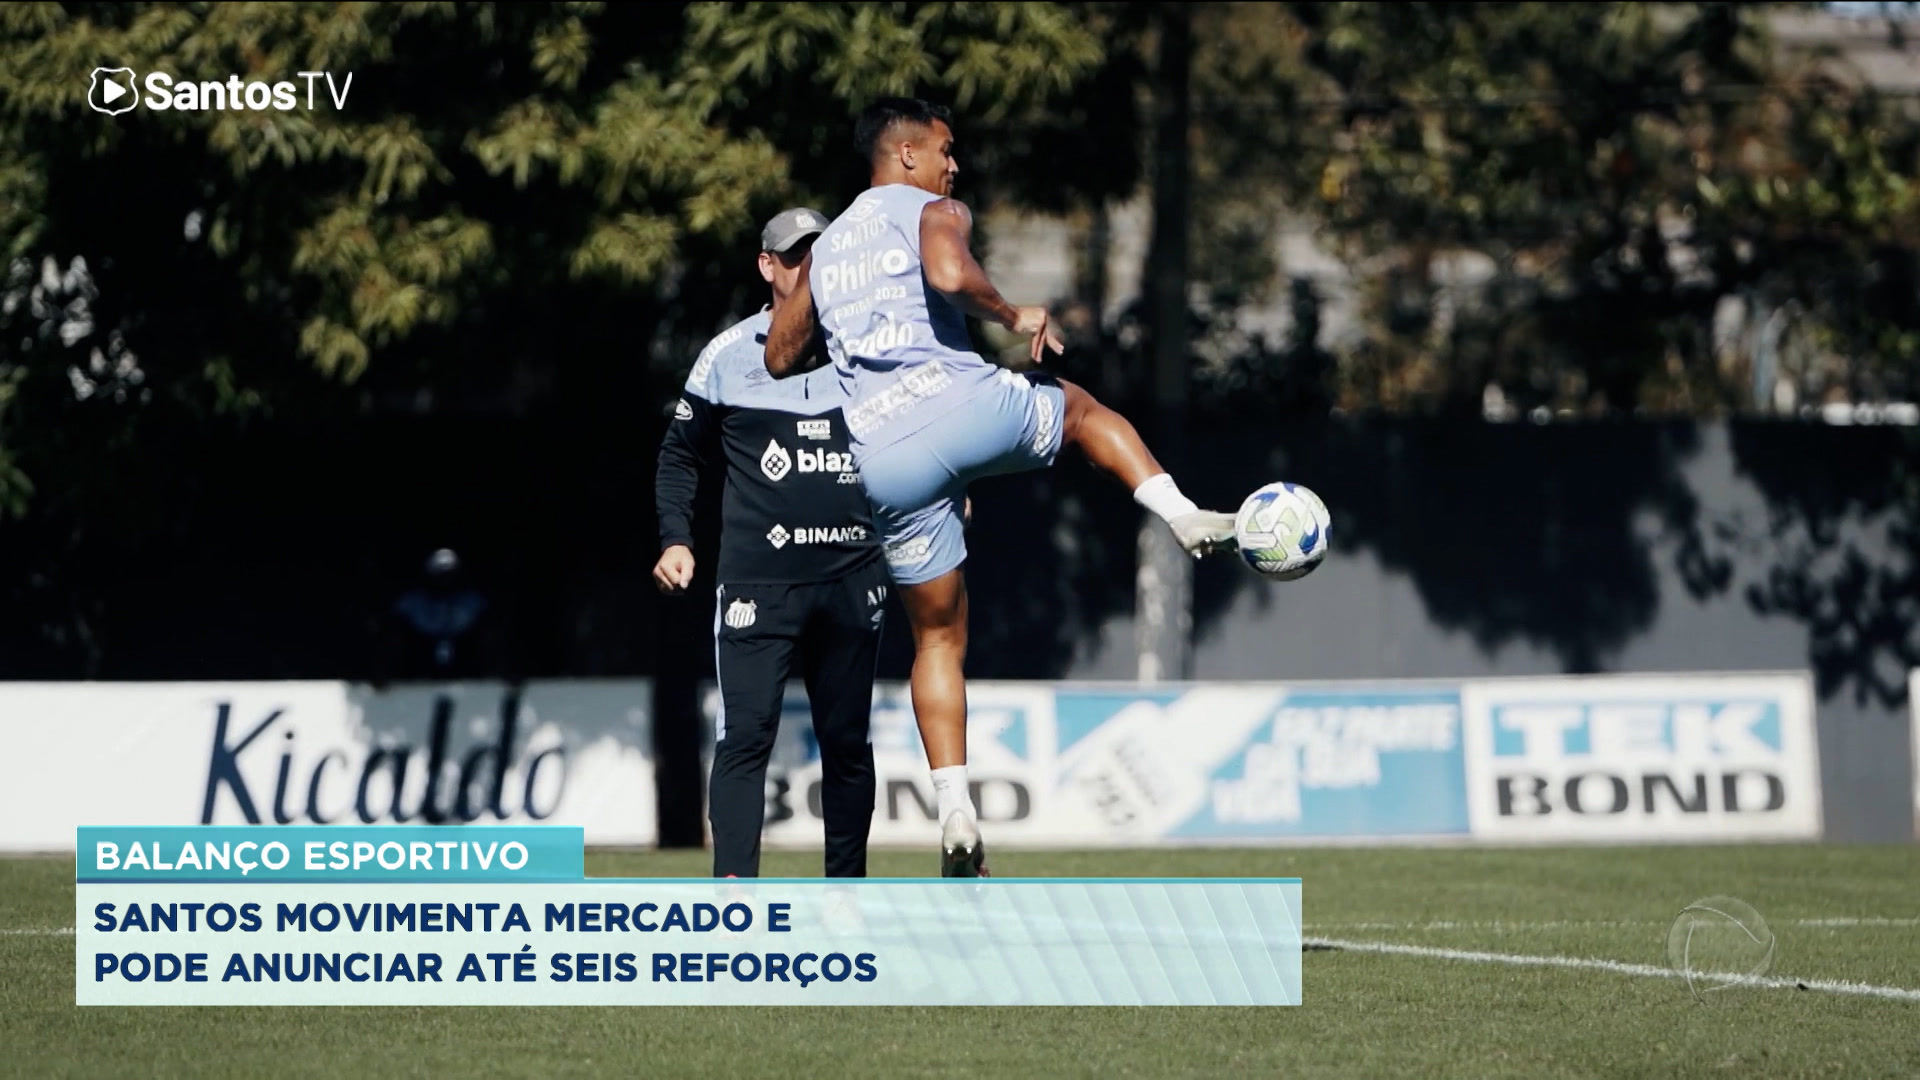 Vídeo: Balanço Esportivo: Santos tenta se reforçar no mercado